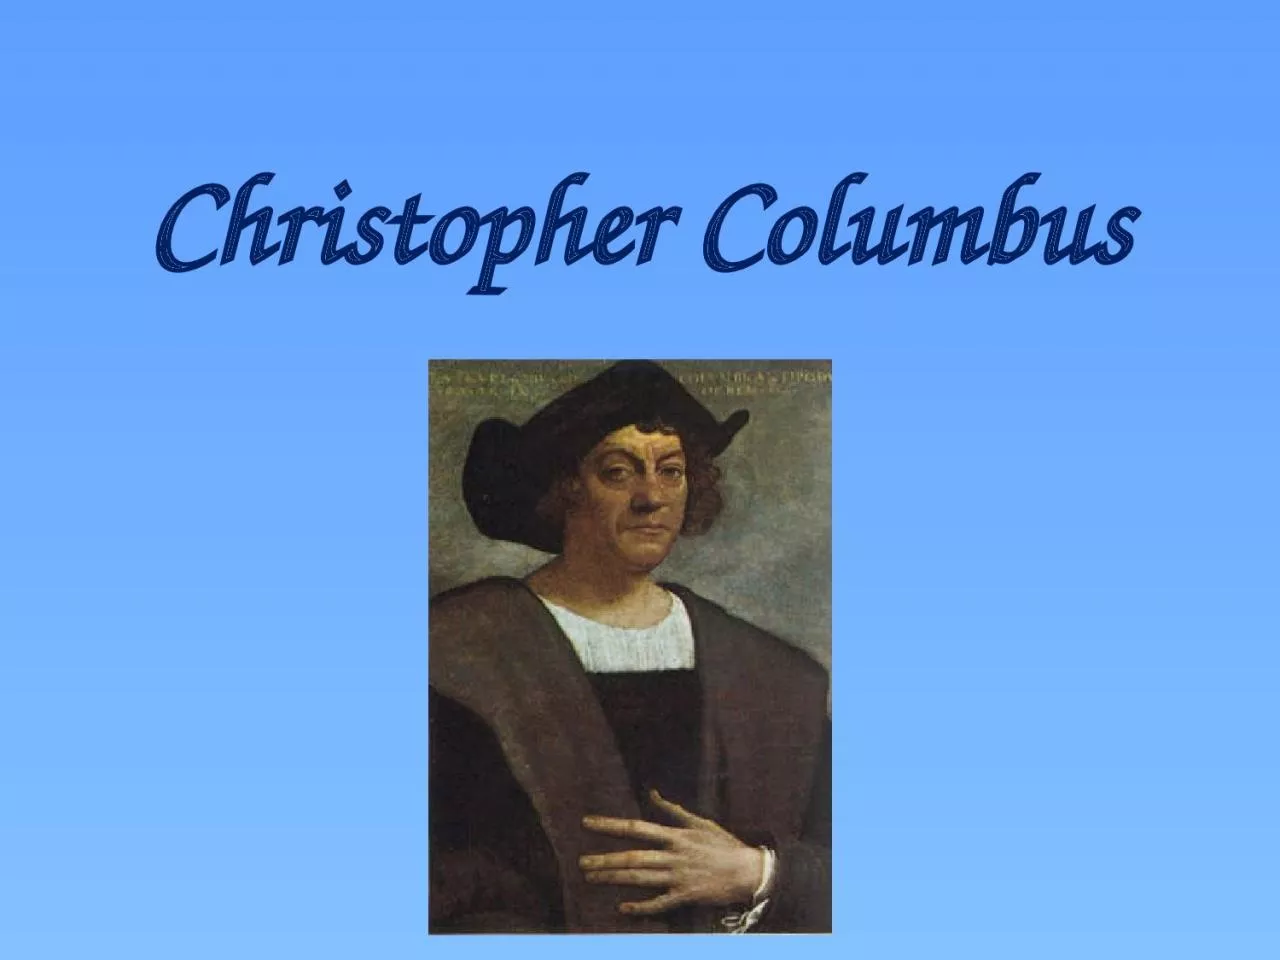 Christopher Columbus Christopher Columbus was born in